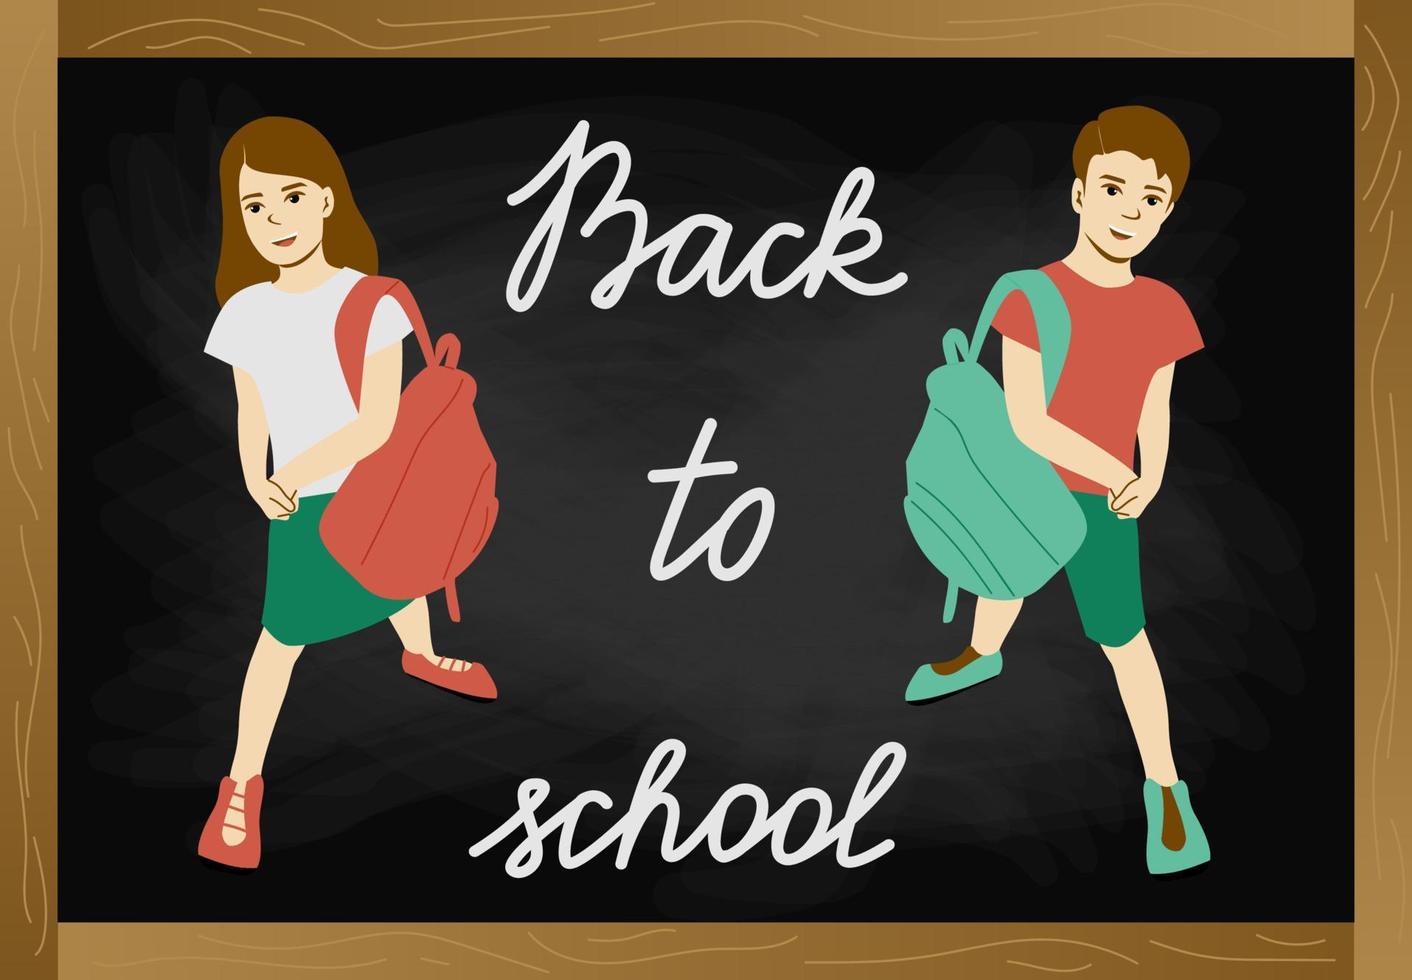 terug naar schoolbord met tekst, twee schoolkinderenmeisje en jongen met schooltassen op bord vectorillustratie als achtergrond. vector